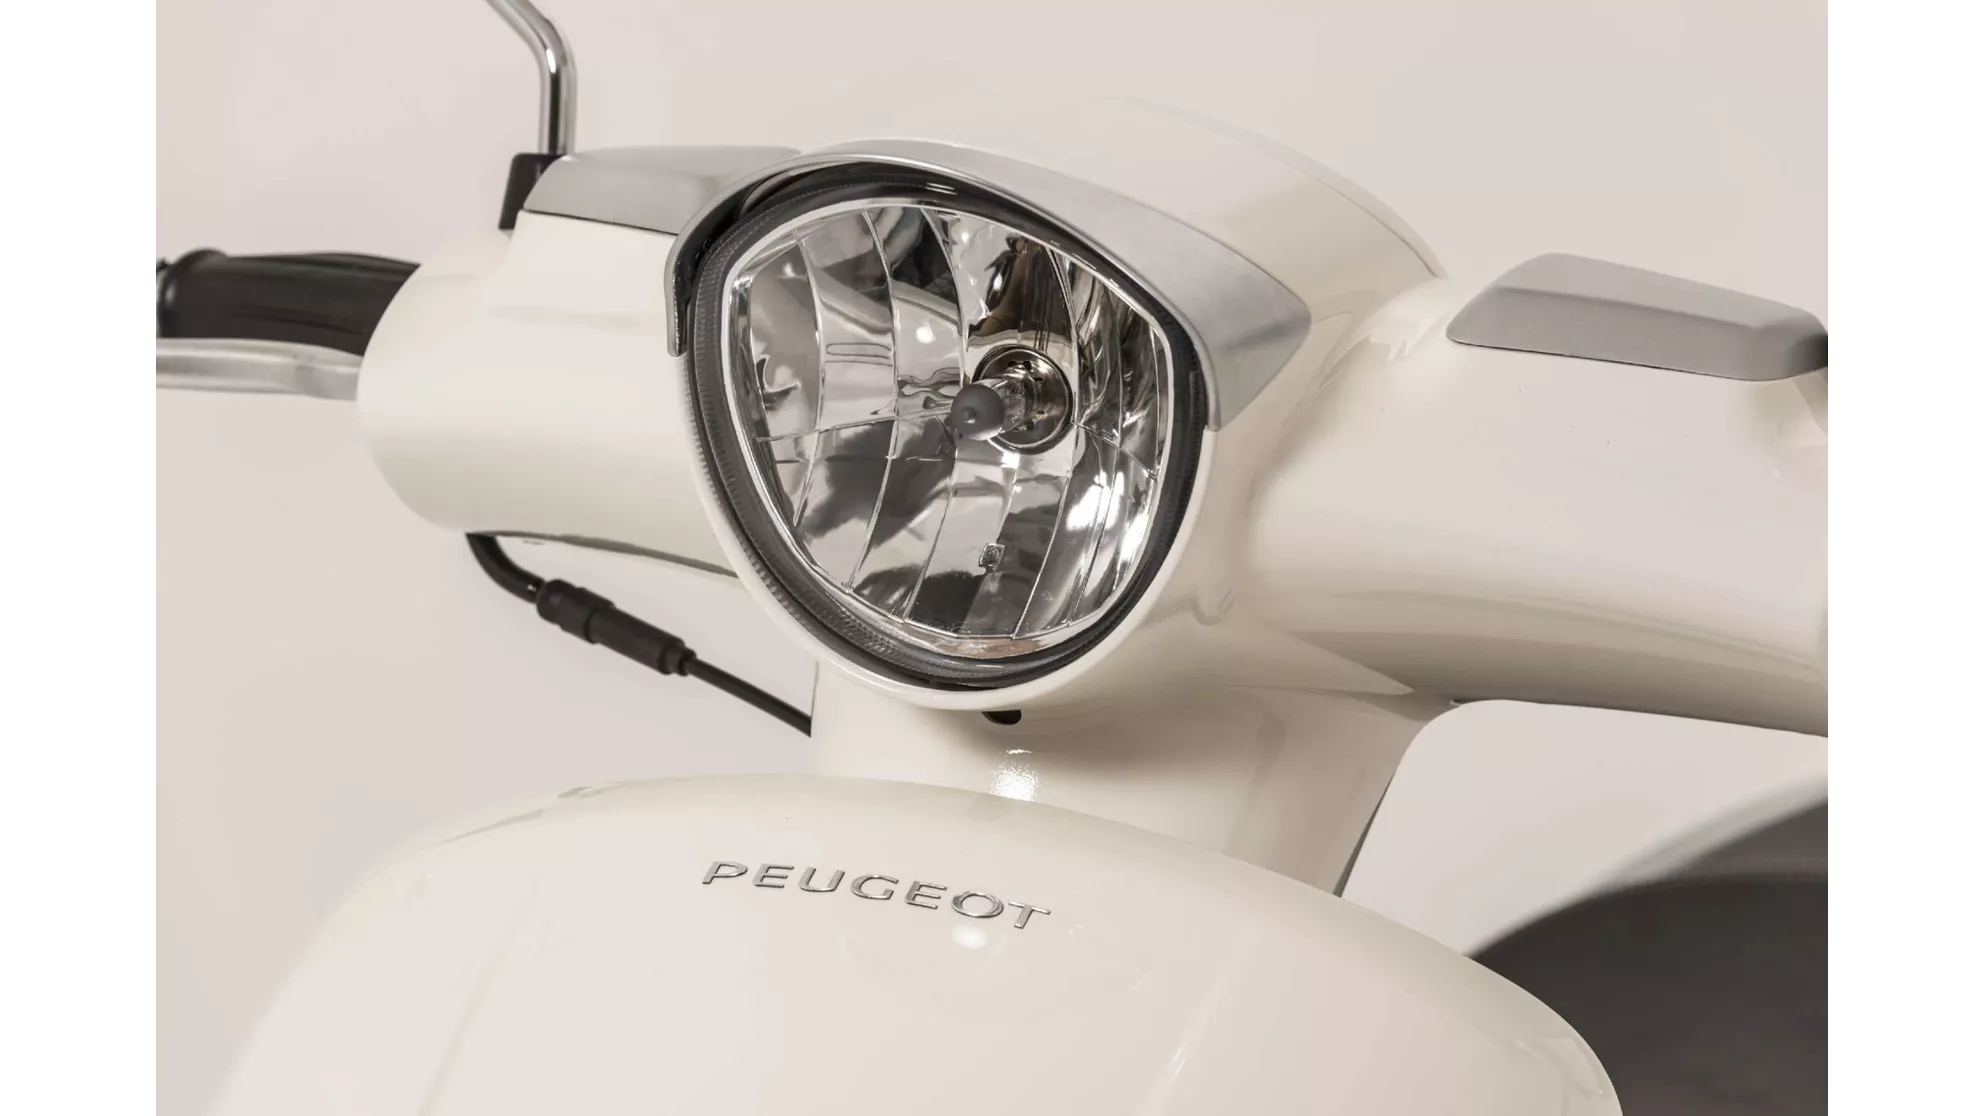 Peugeot Django 50 2T Heritage - Image 9